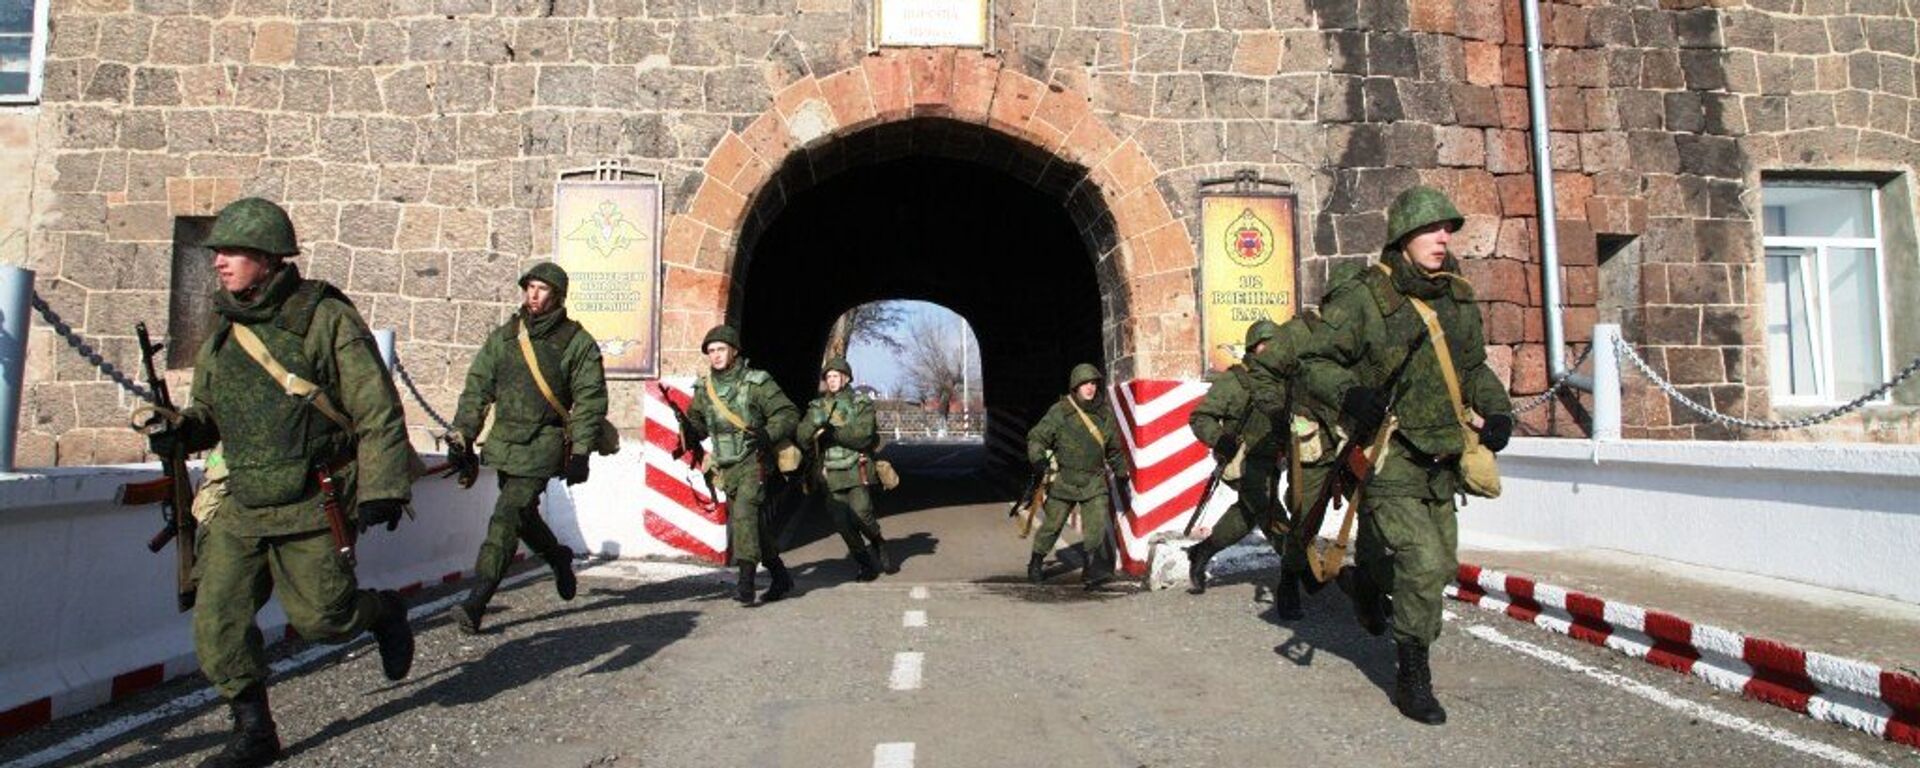 В Армении военнослужащие отразили атаку на штаб военной базы ЮВО условной диверсионной группы. - Sputnik Արմենիա, 1920, 01.07.2021